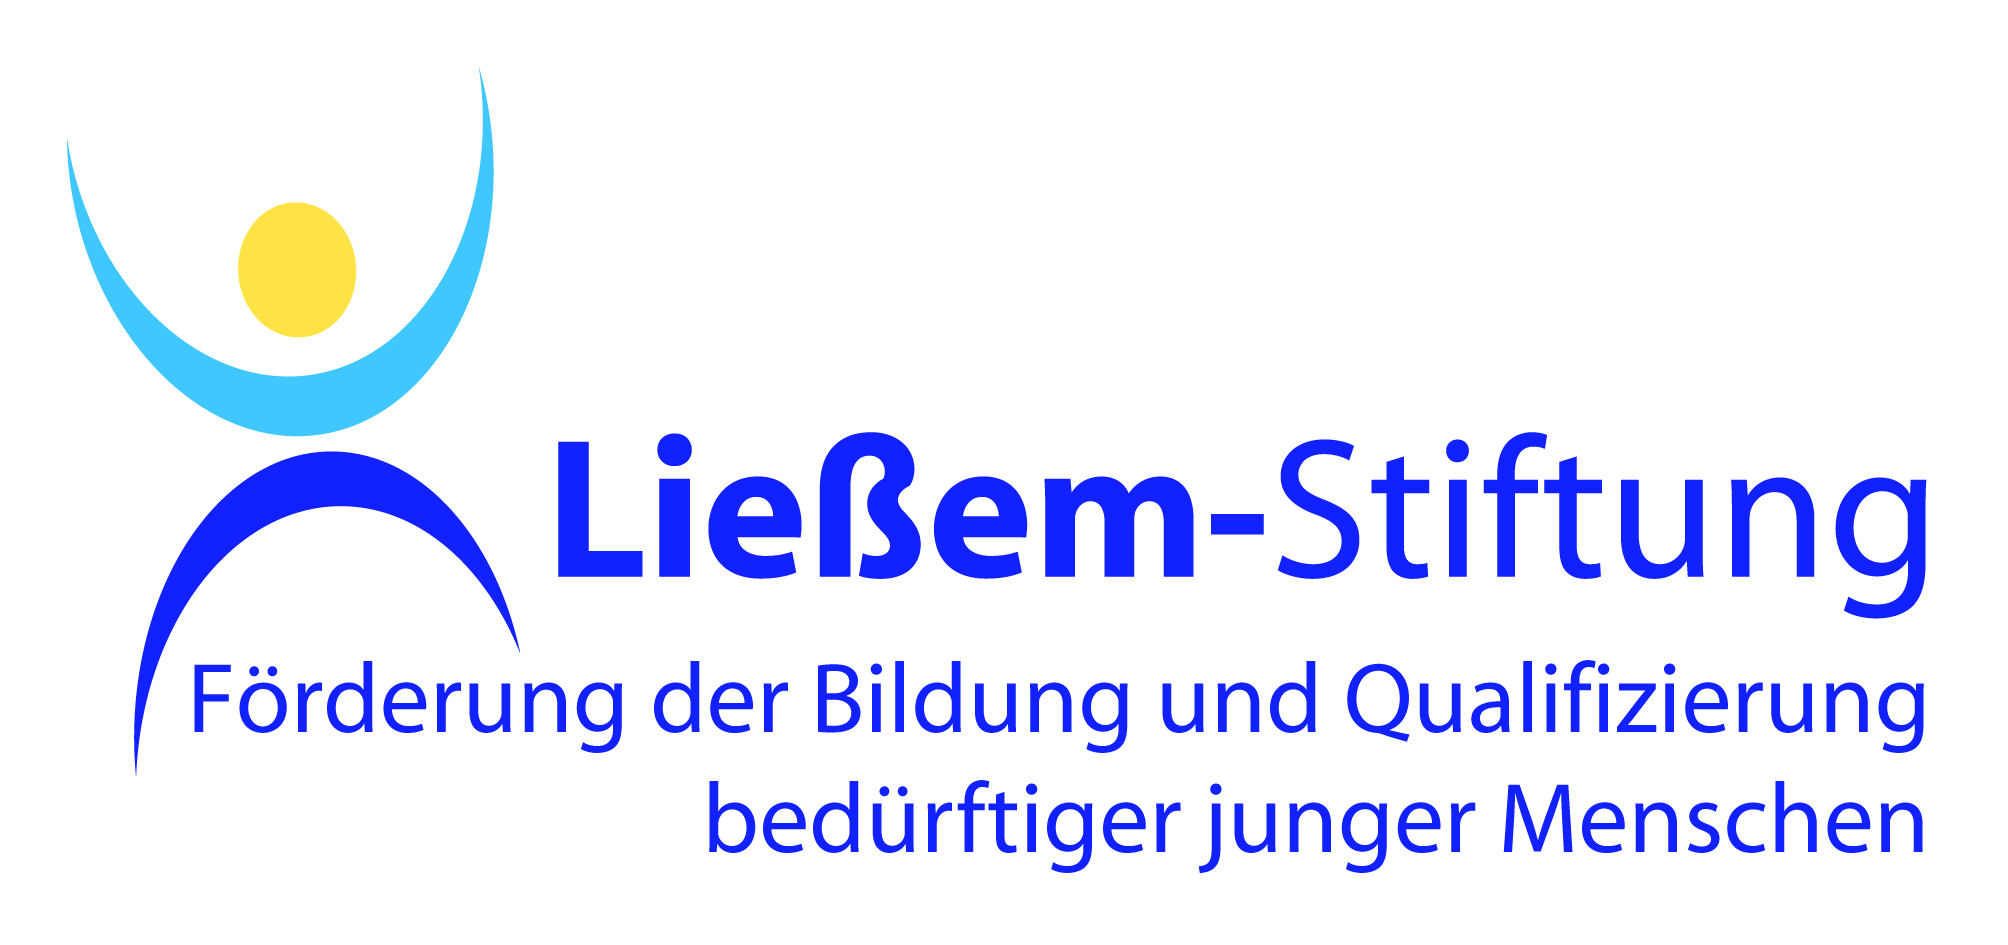 Logo der Ließem-Stiftung